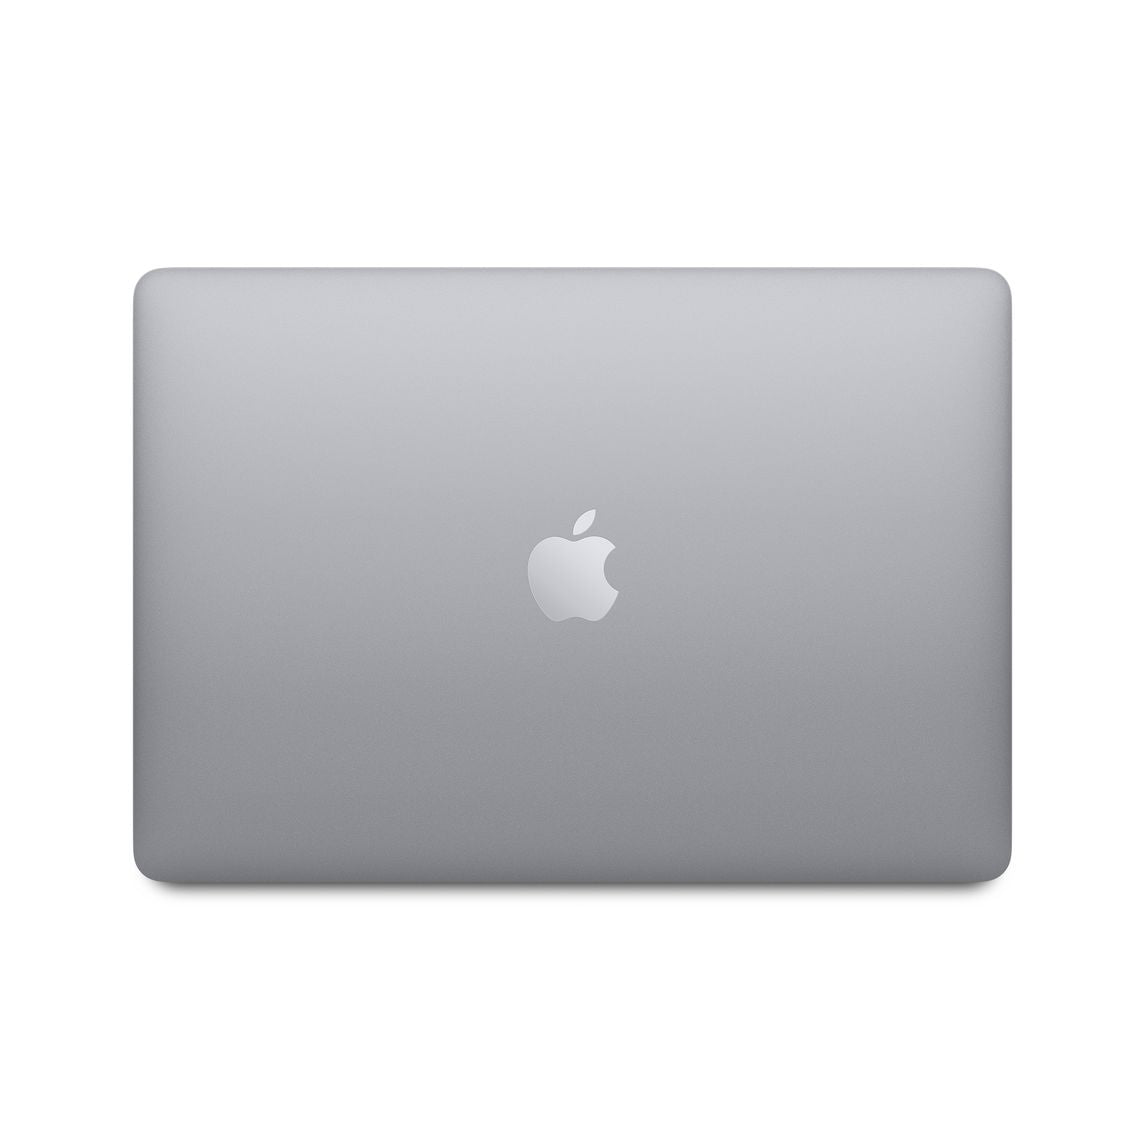 【美品】M1 MacBook Air Retina スペースグレイマックブック